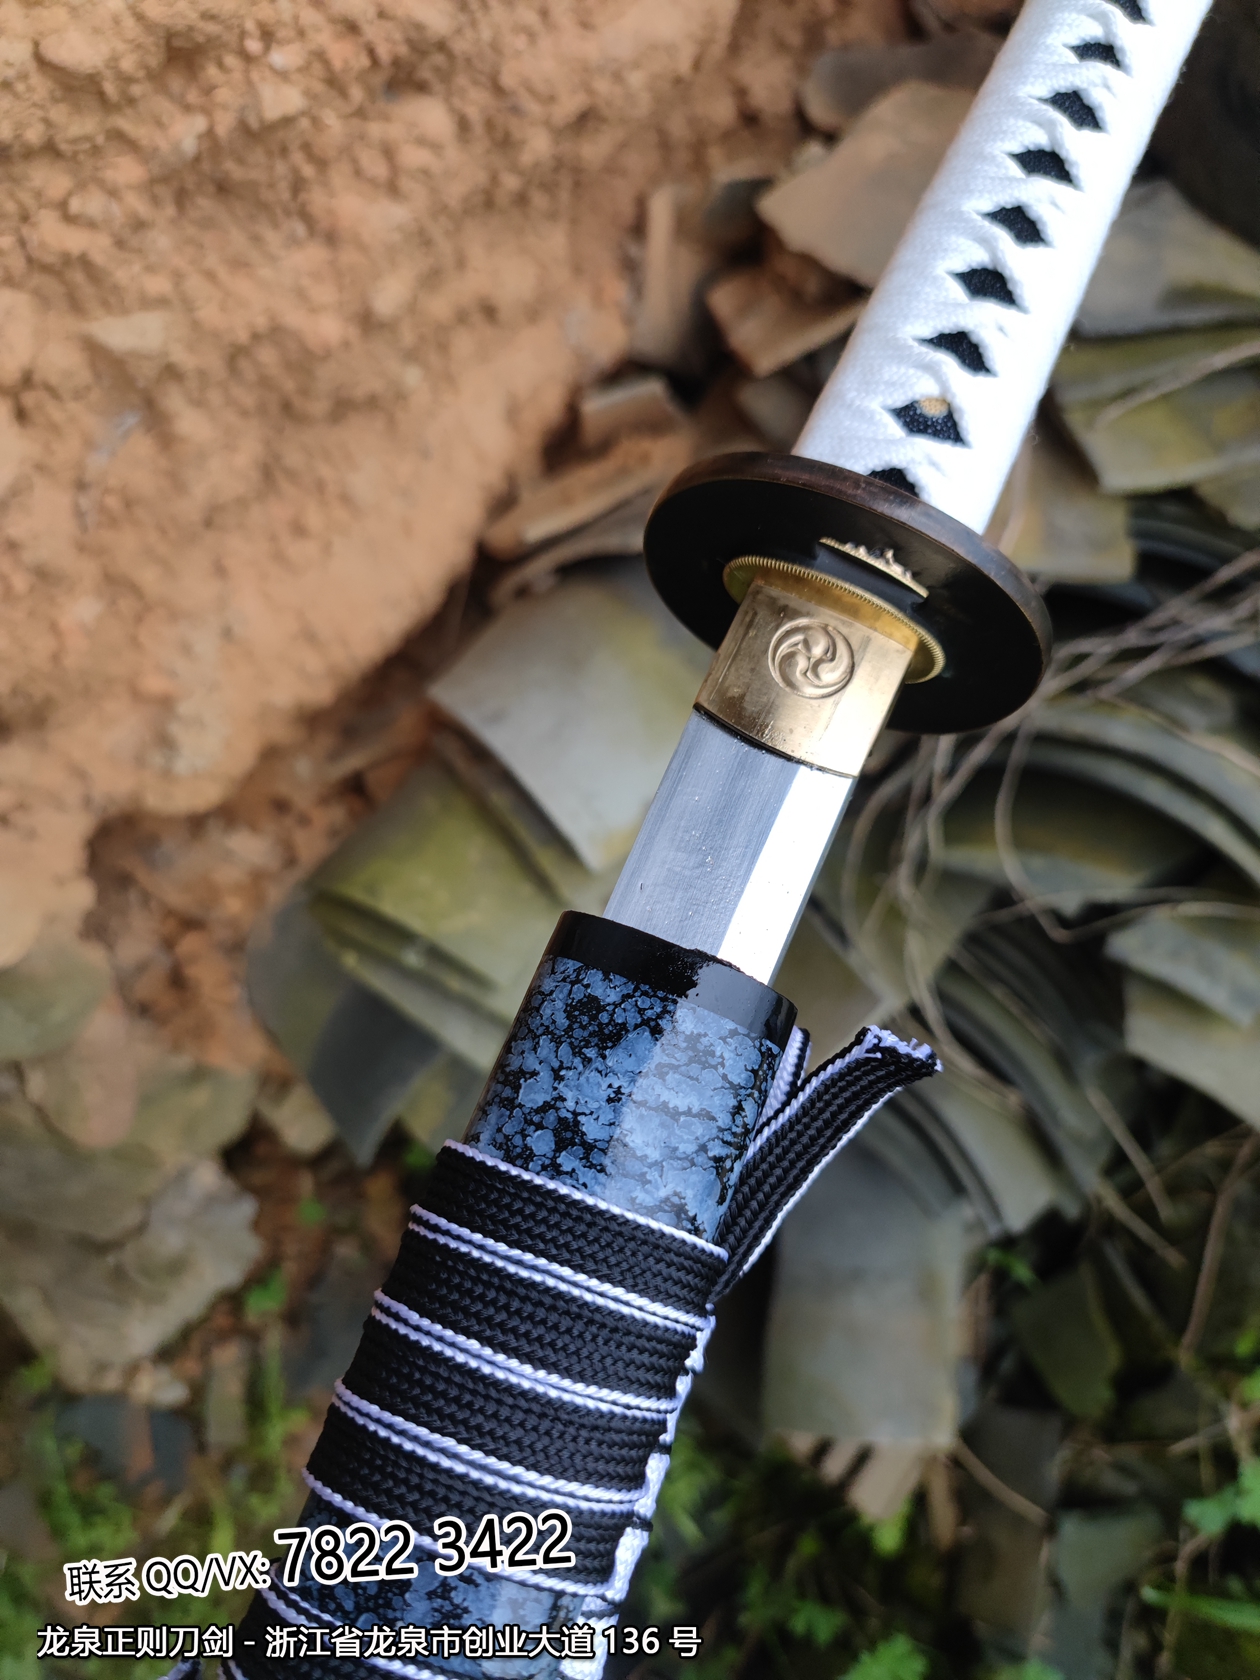 鬼灭之刃武士刀,武士刀,中国武士刀,龙泉剑,日本刀图片